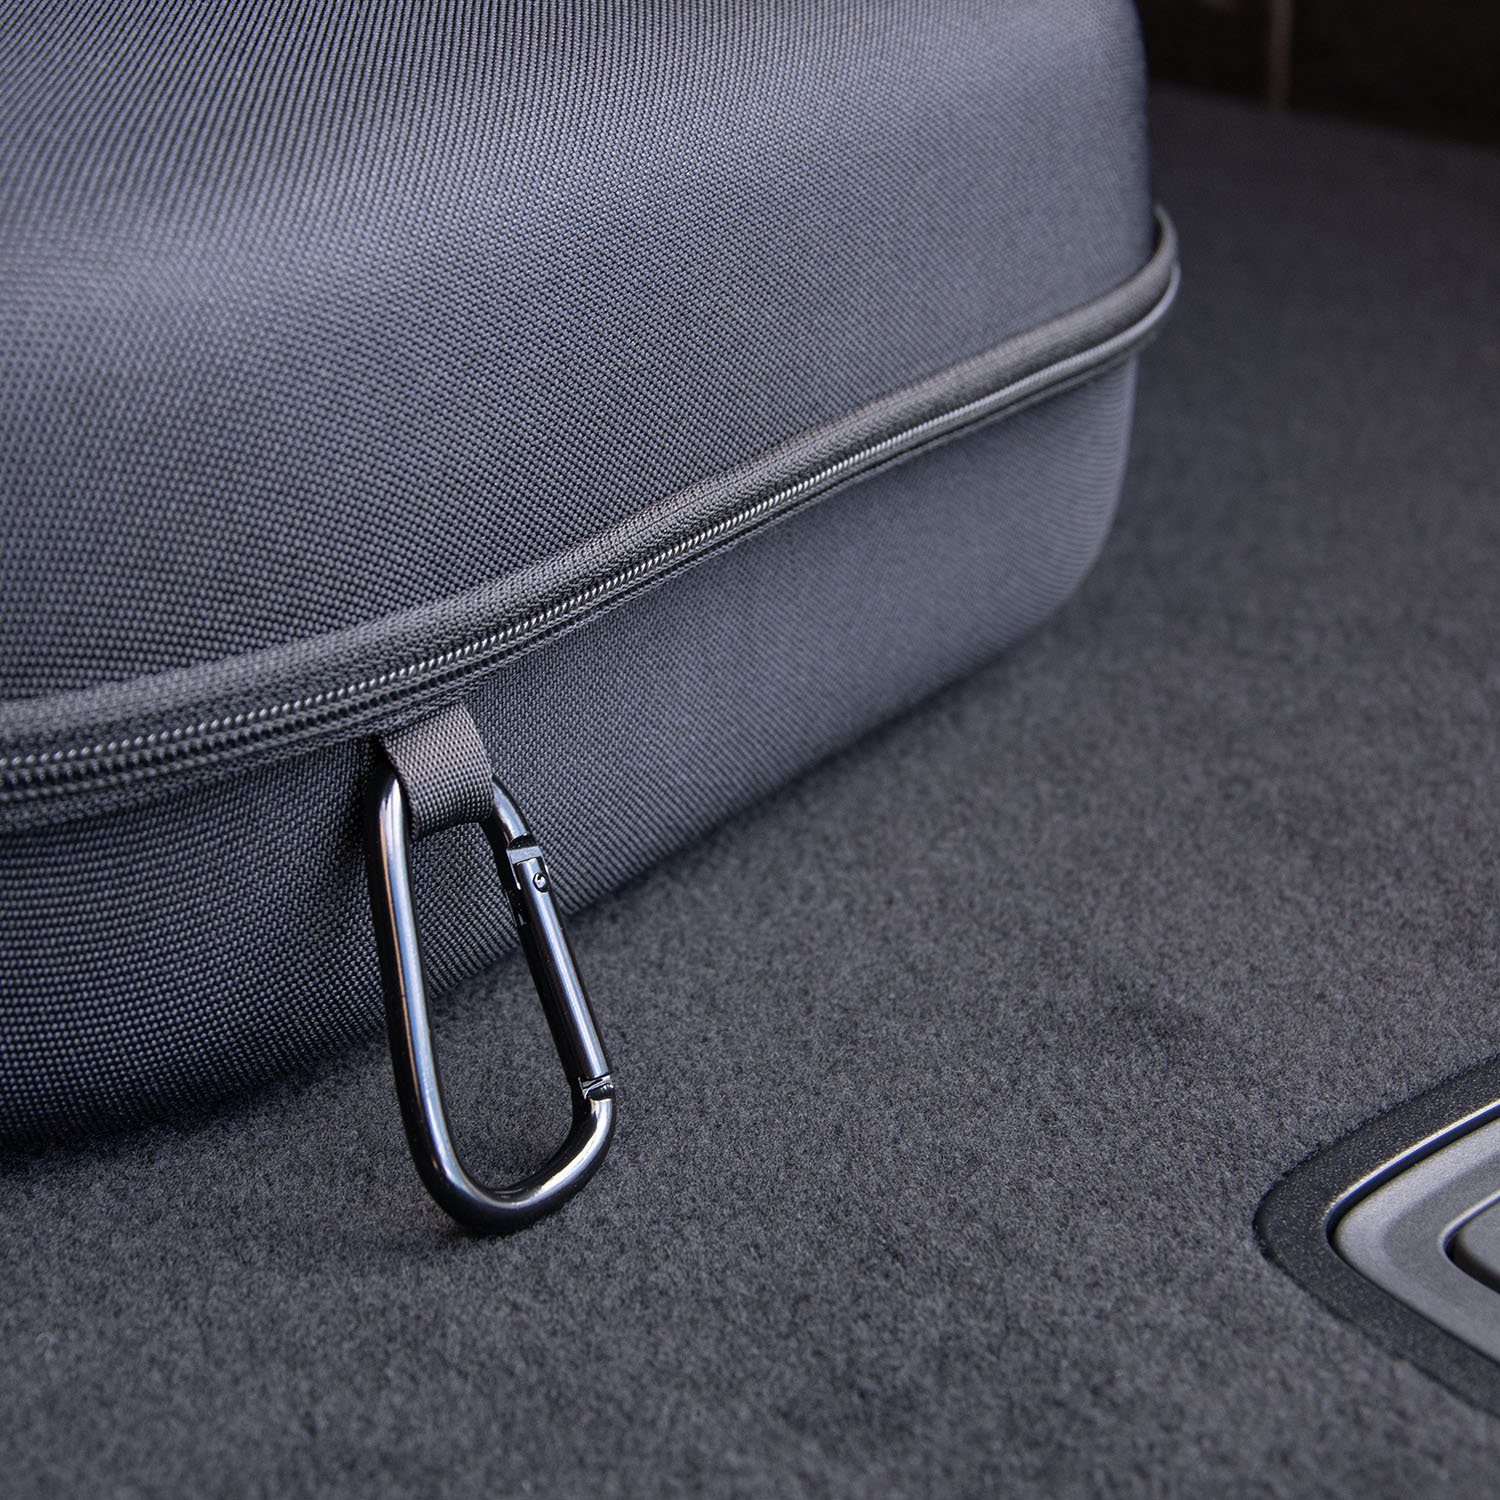 ABSINA Rücksitzorganizer Hardcase Ladekabel Tasche Elektroauto bis